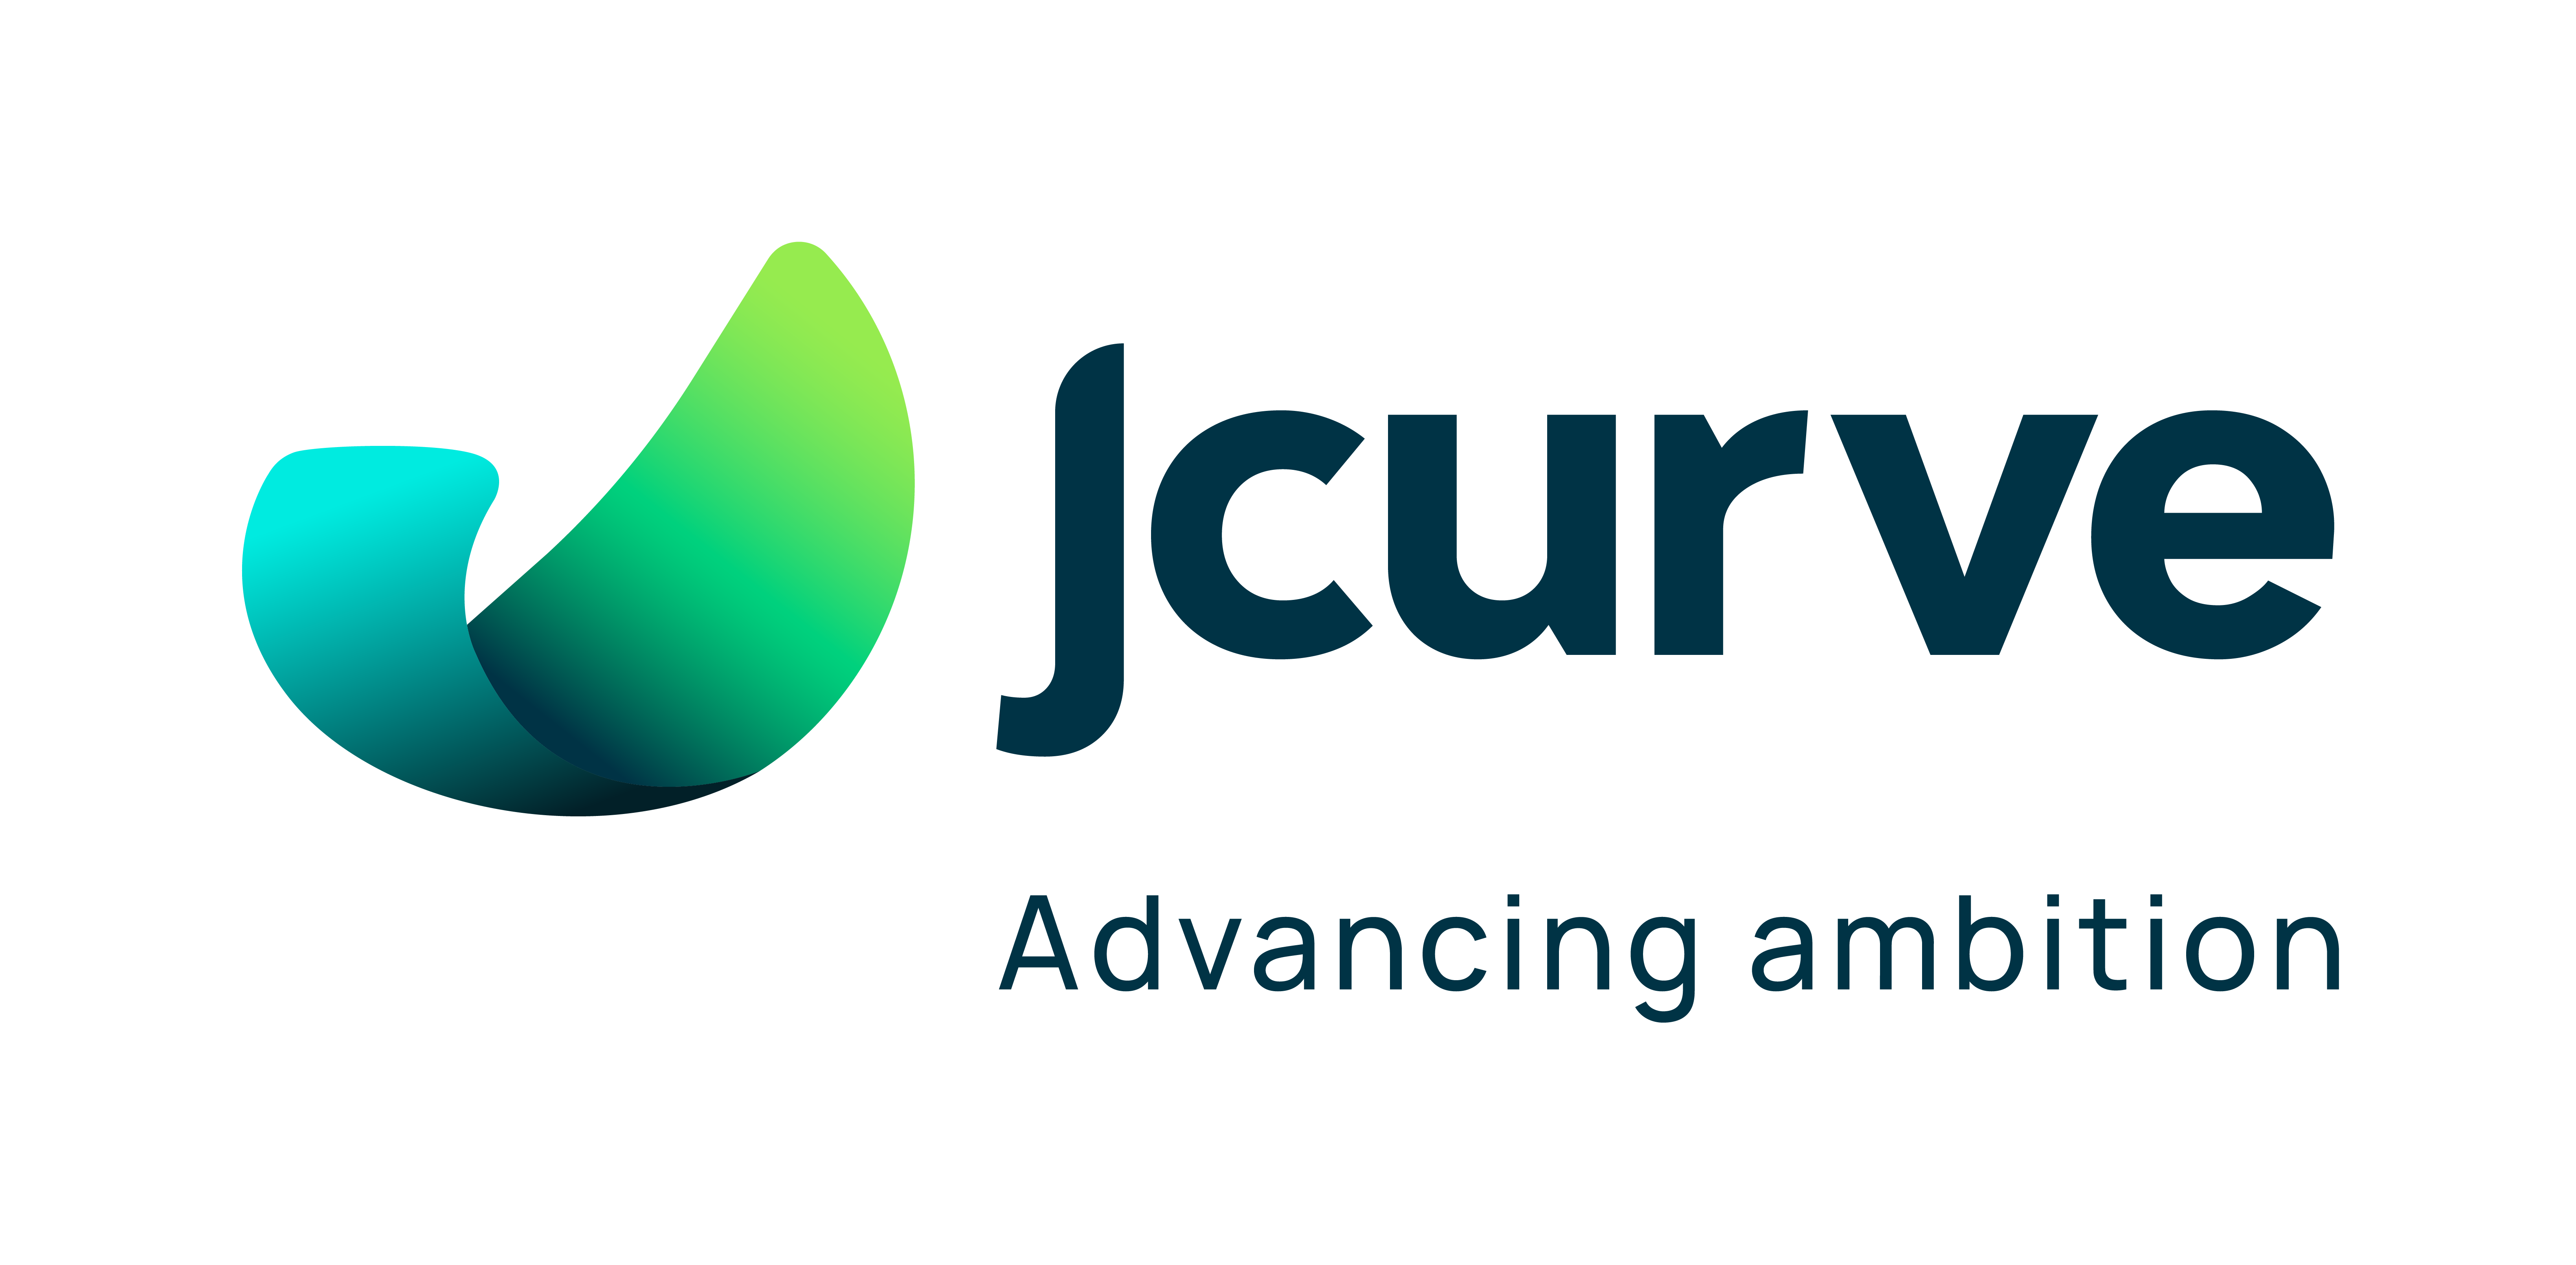 Jcurve Solutions Asia Pte Ltd